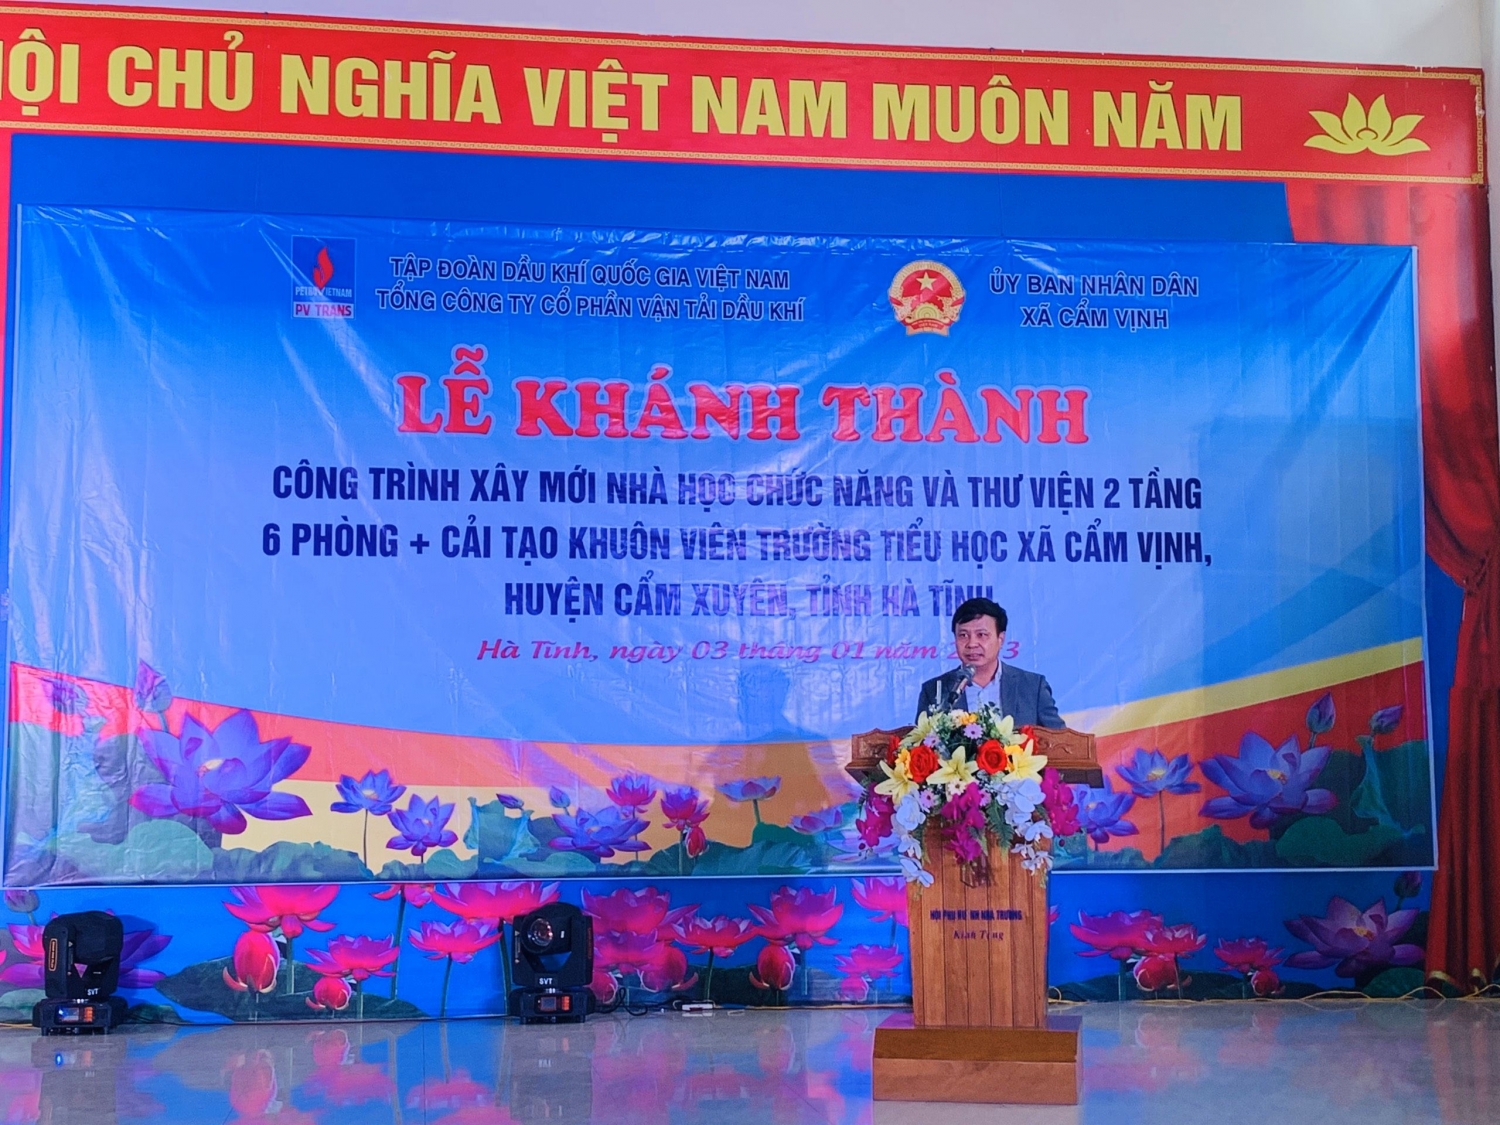 Ông Phạm Việt Anh - Bí thư Đảng ủy, Chủ tịch HĐQT phát biểu tại buổi lễ